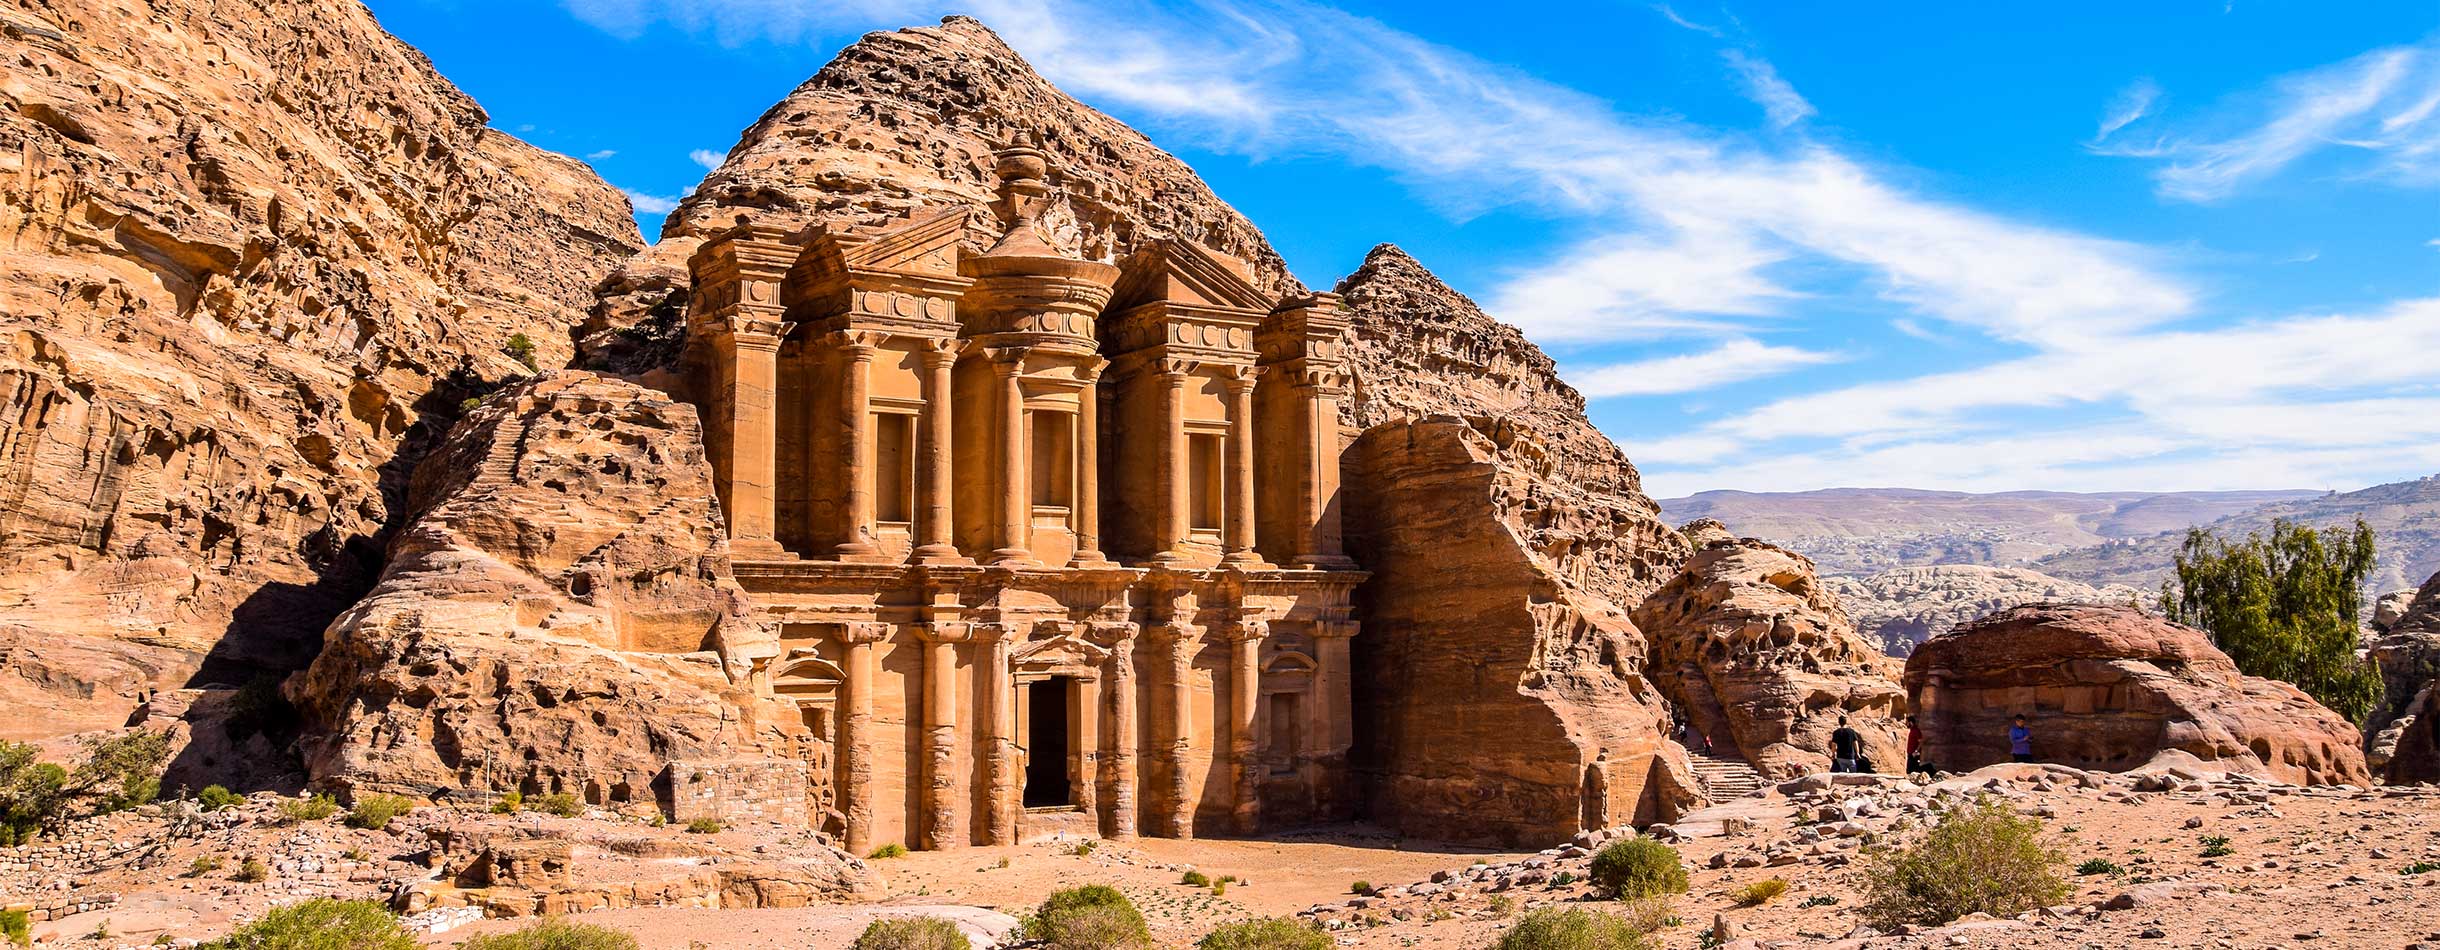 Highlight of Petra, The Ad Deir, The Monastery